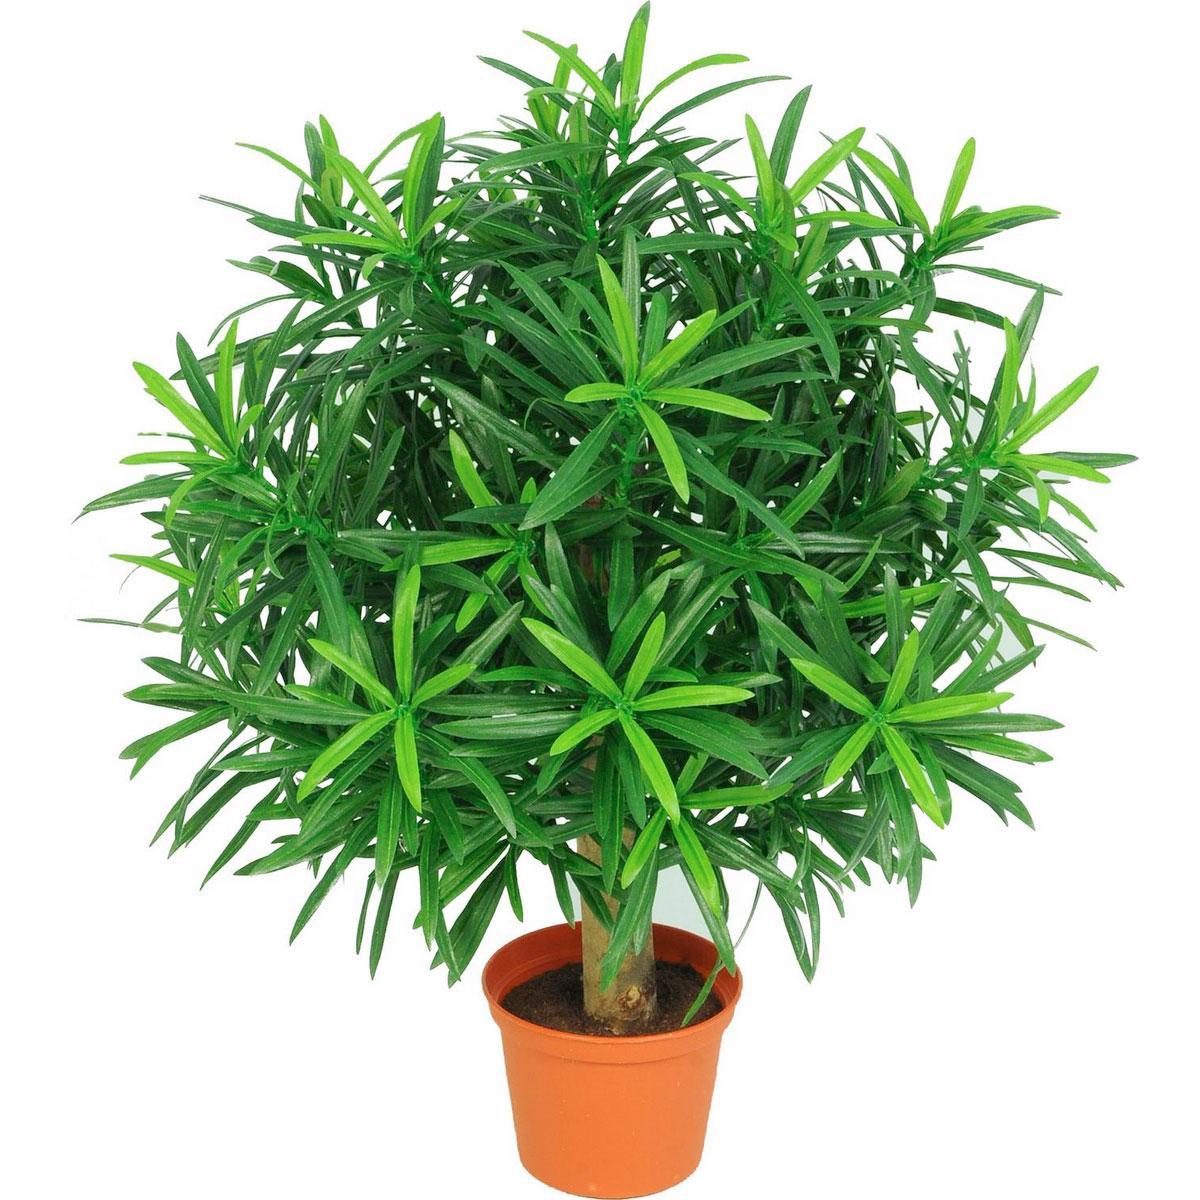 PODOCARPUS KUGEL DELUXE Artificial Tree Plant